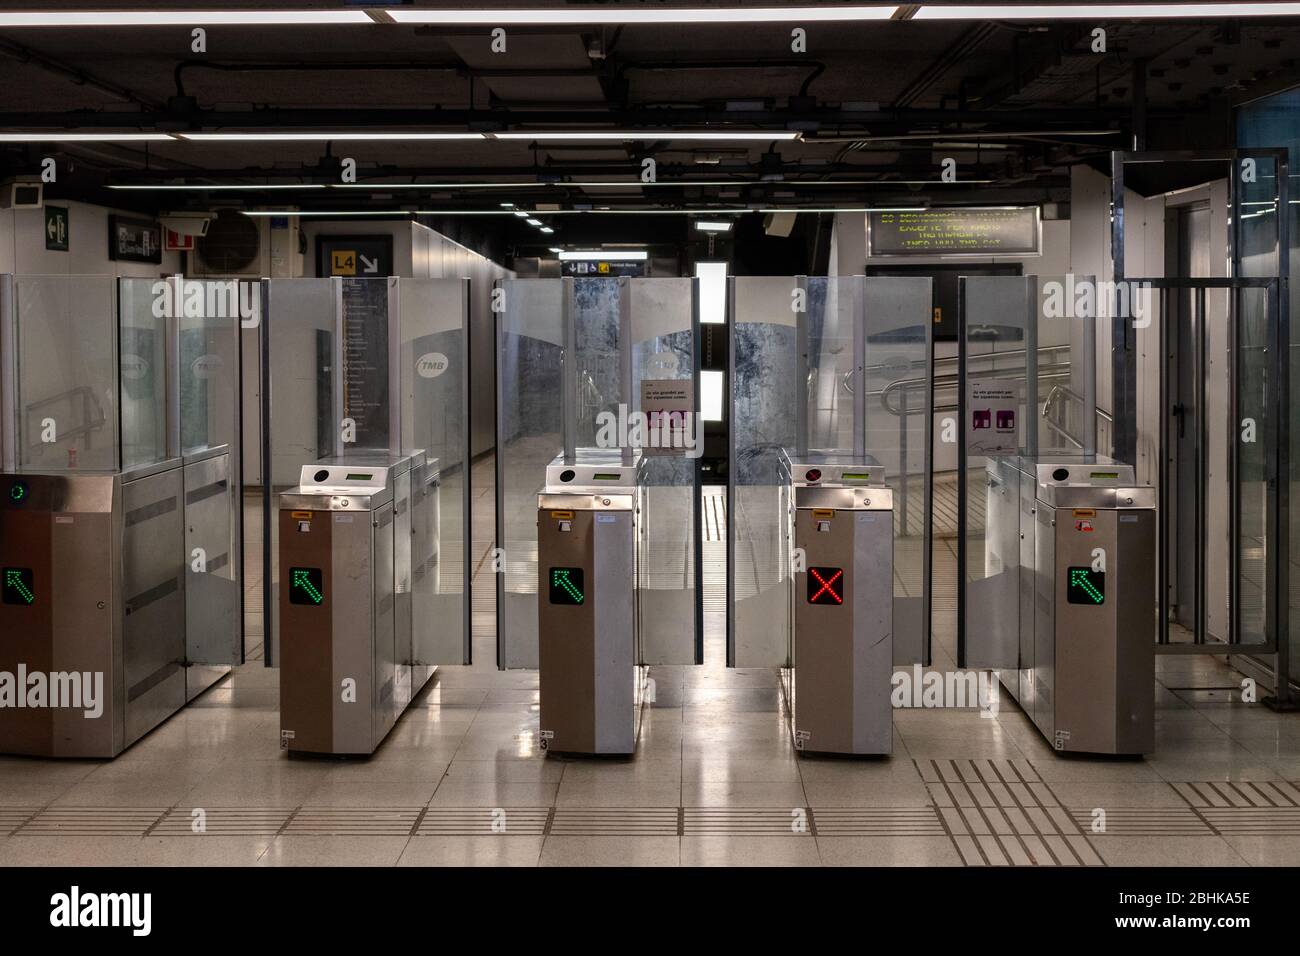 Barcelone, Espagne. 26 avril 2020. Entrée vide d'une station de métro à Barcelone pendant le verrouillage du coronavirus Banque D'Images